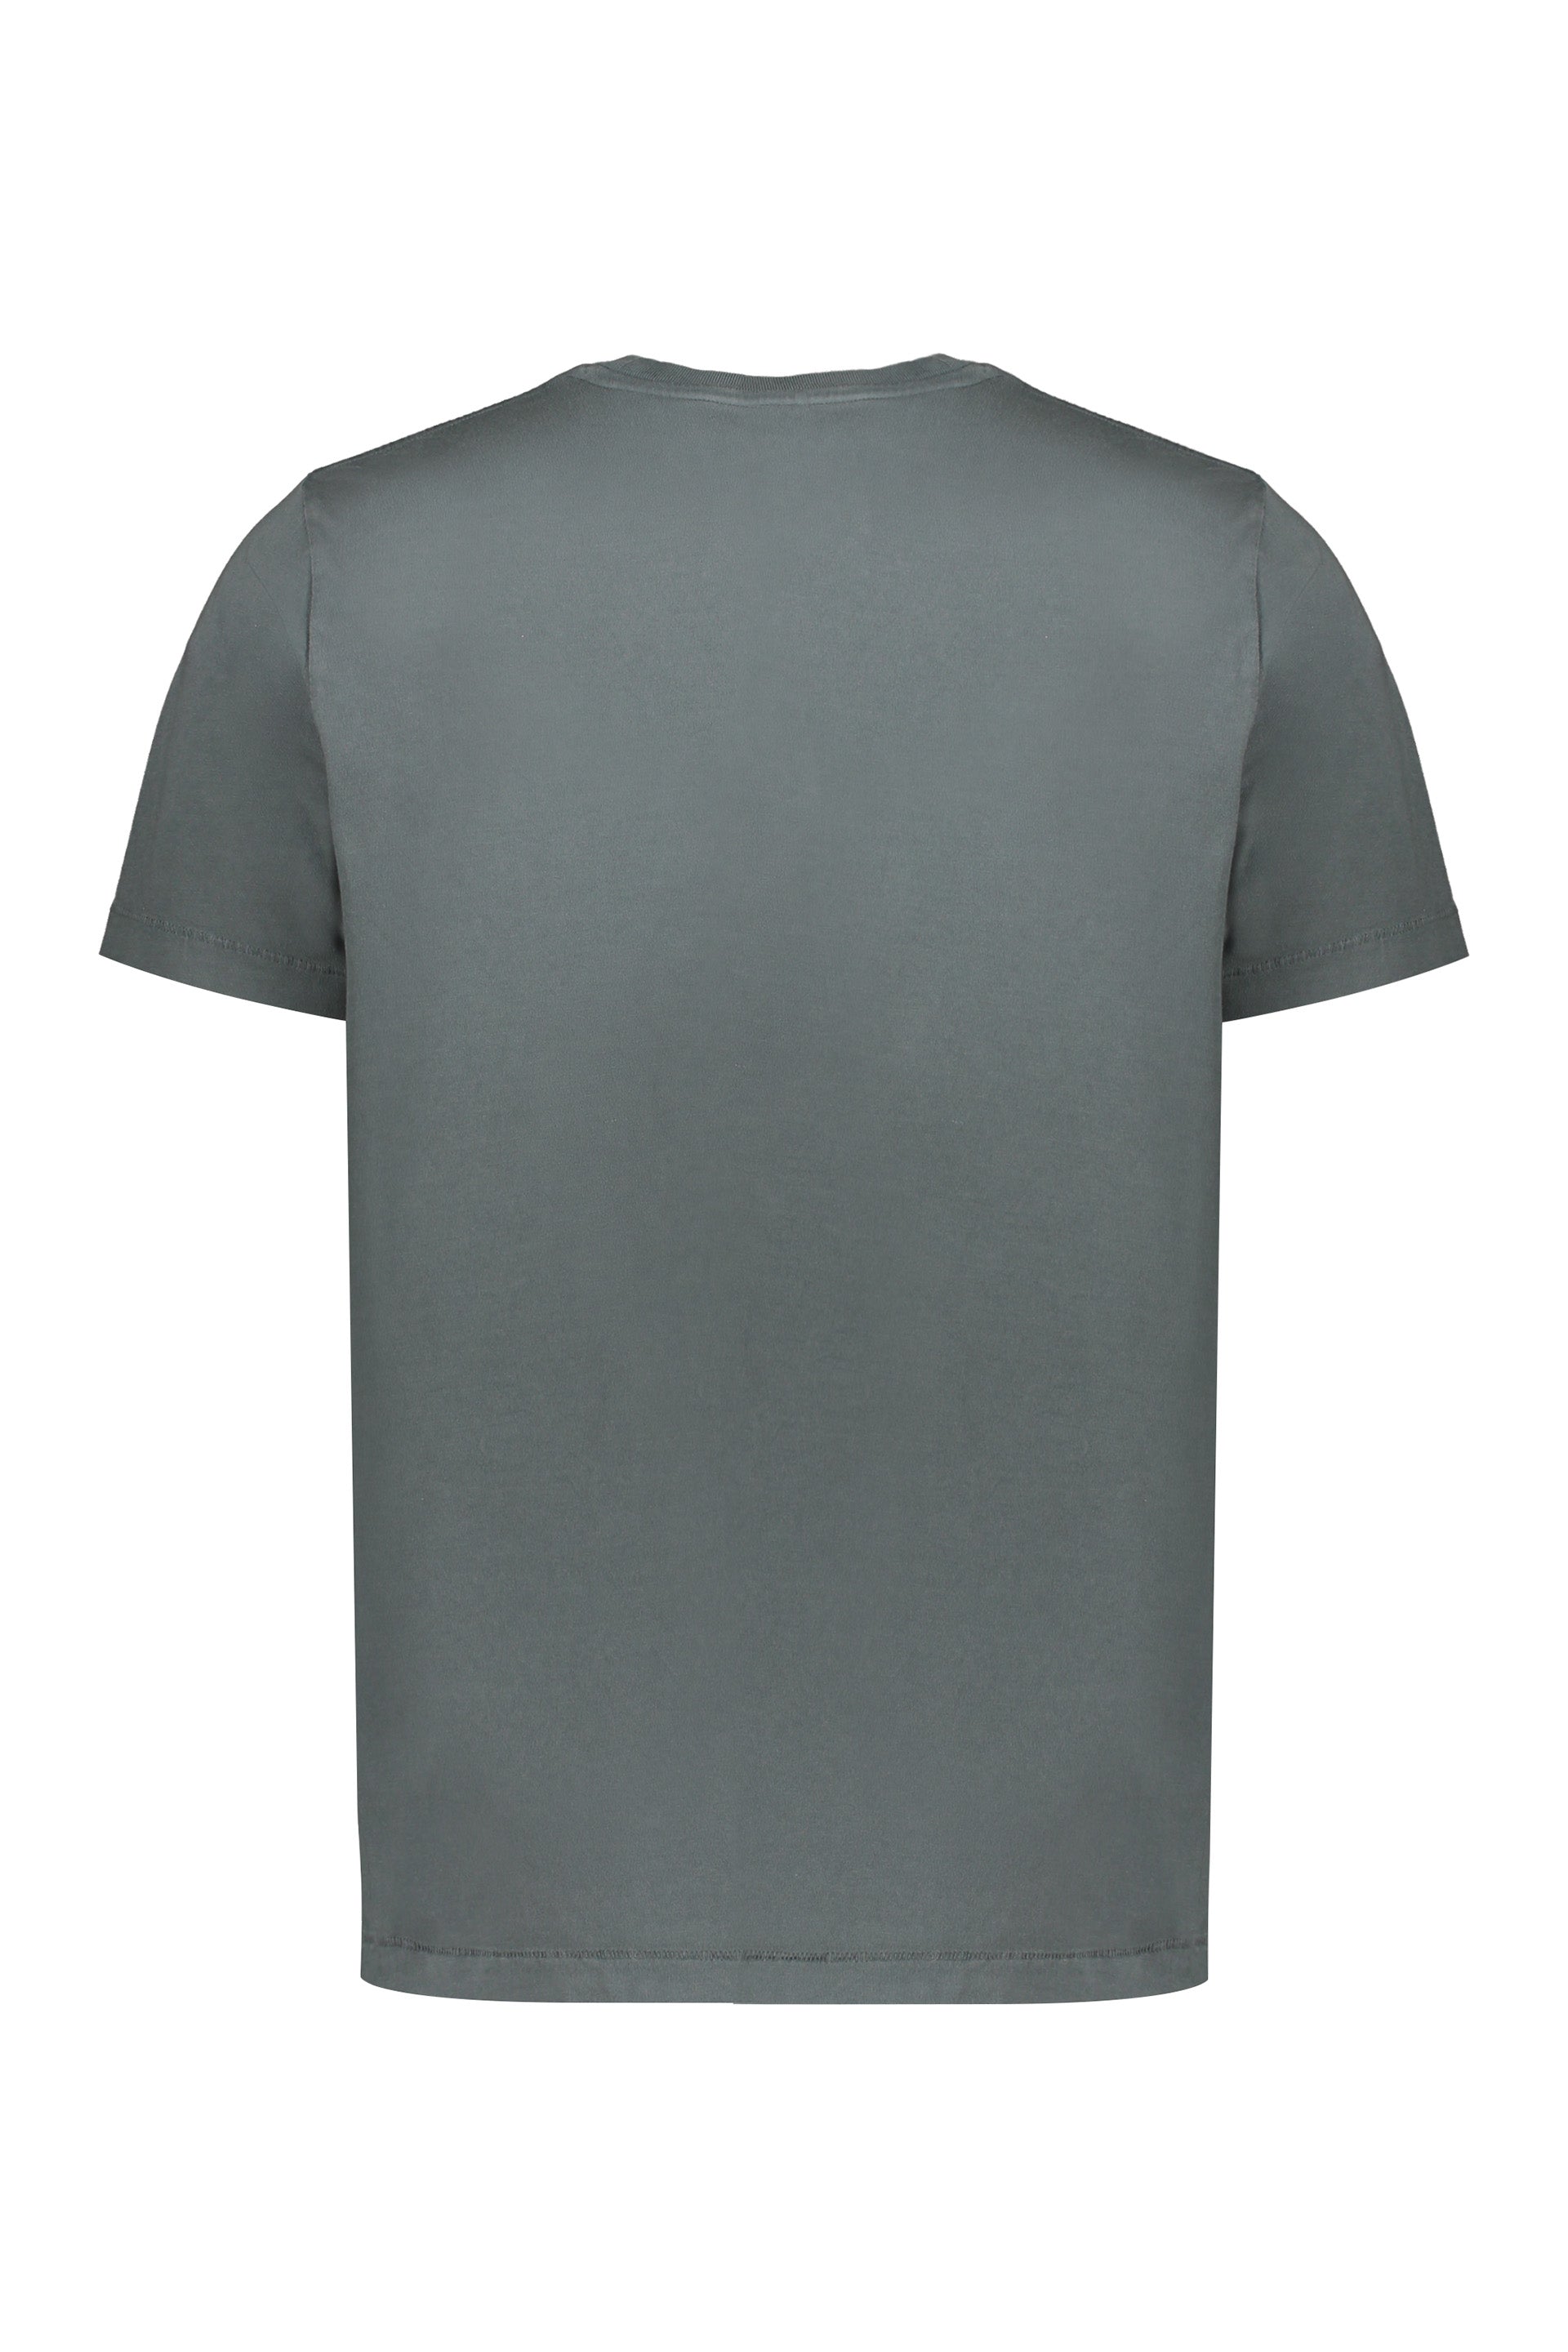 Parajumpers-OUTLET-SALE-Cotton-T-shirt-Shirts-ARCHIVE-COLLECTION-2_14d0b19a-ca6a-403d-a4de-4f17c79ee2fb.jpg